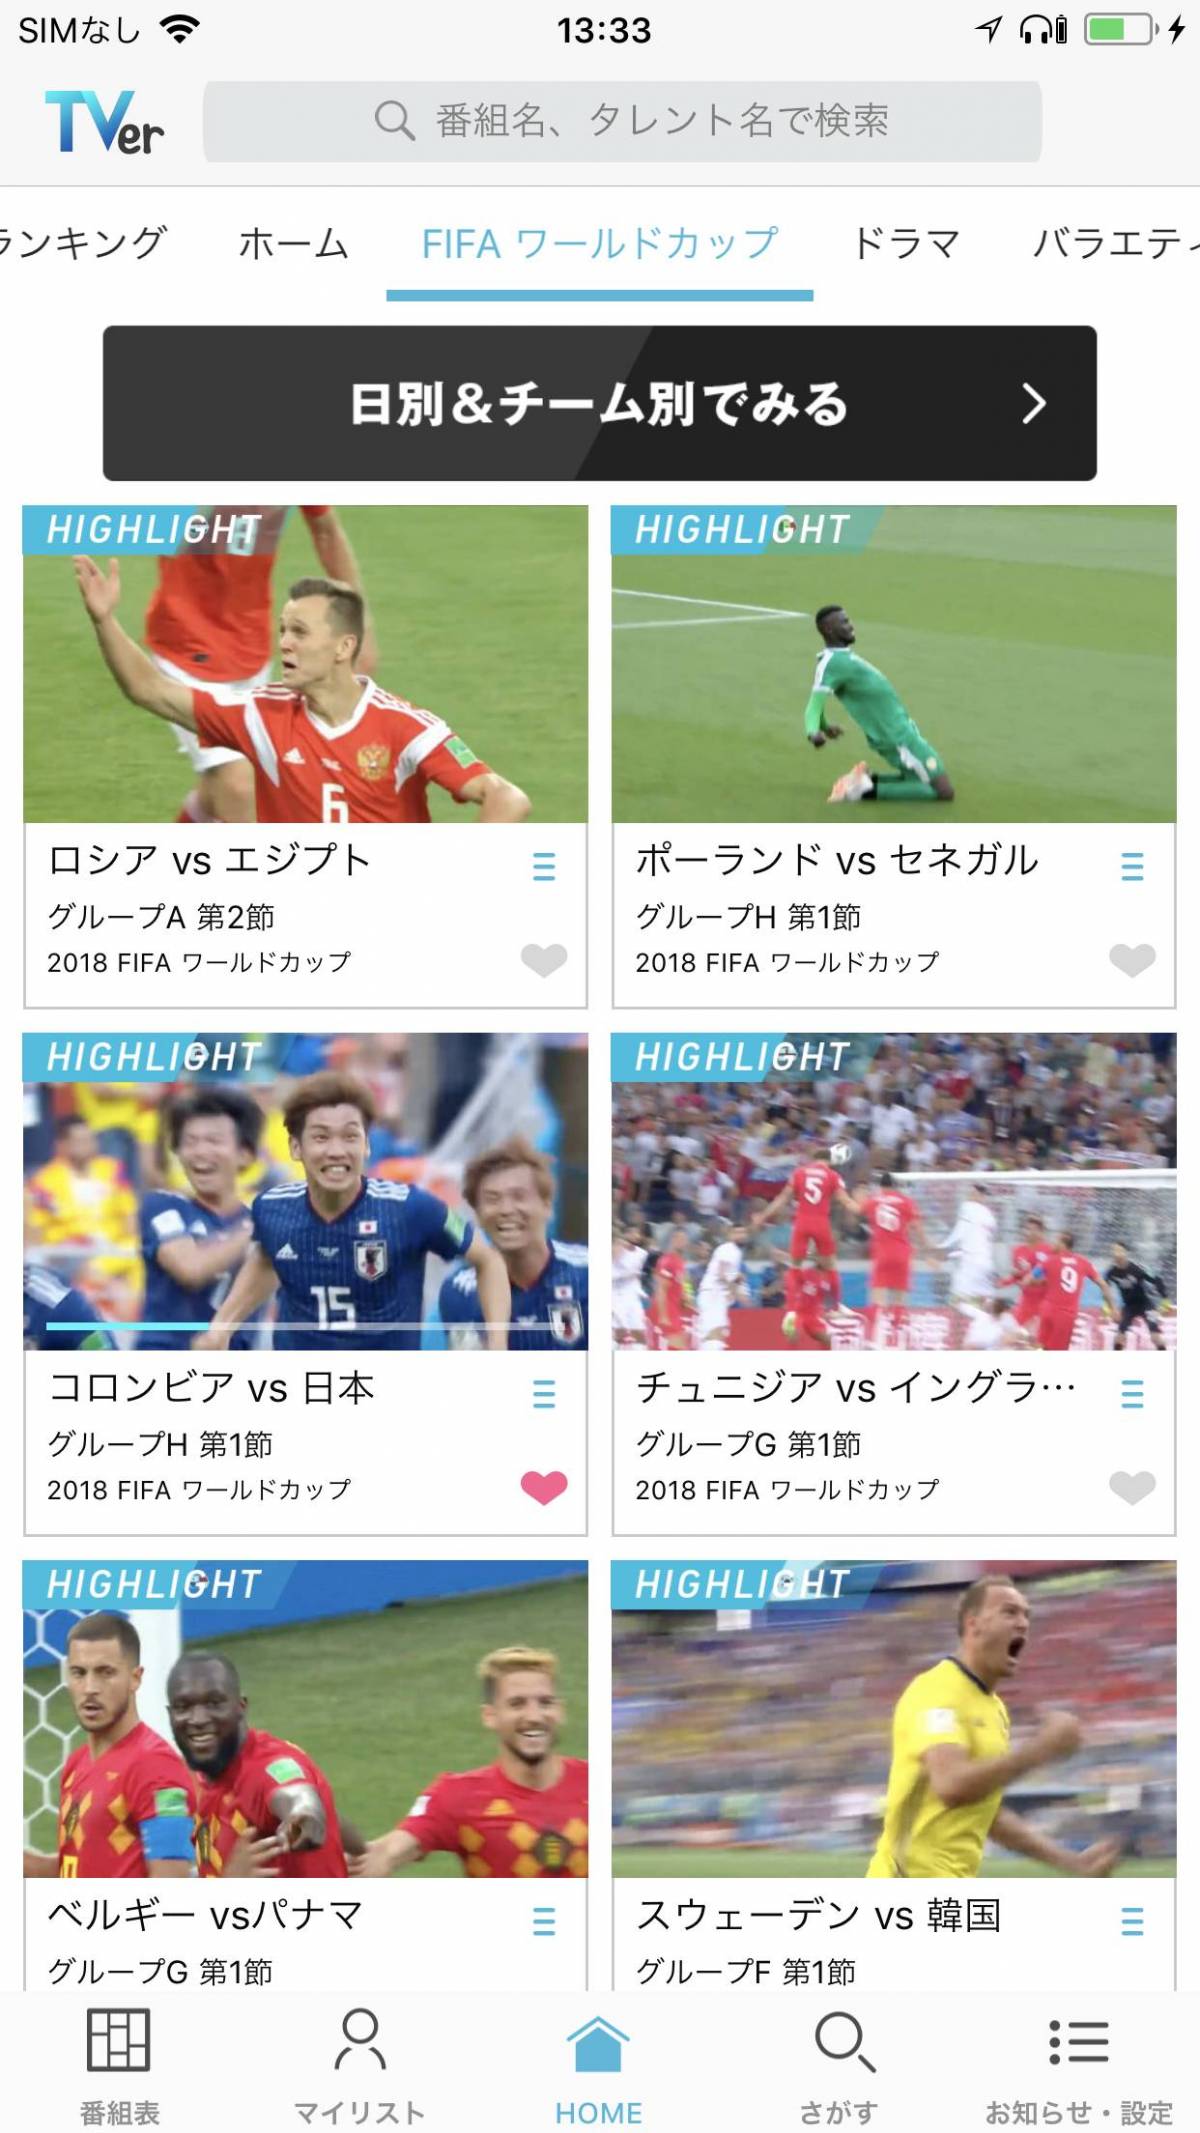 Fifaワールドカップをスマホで視聴する方法 アプリで観戦しよう Appliv Topics